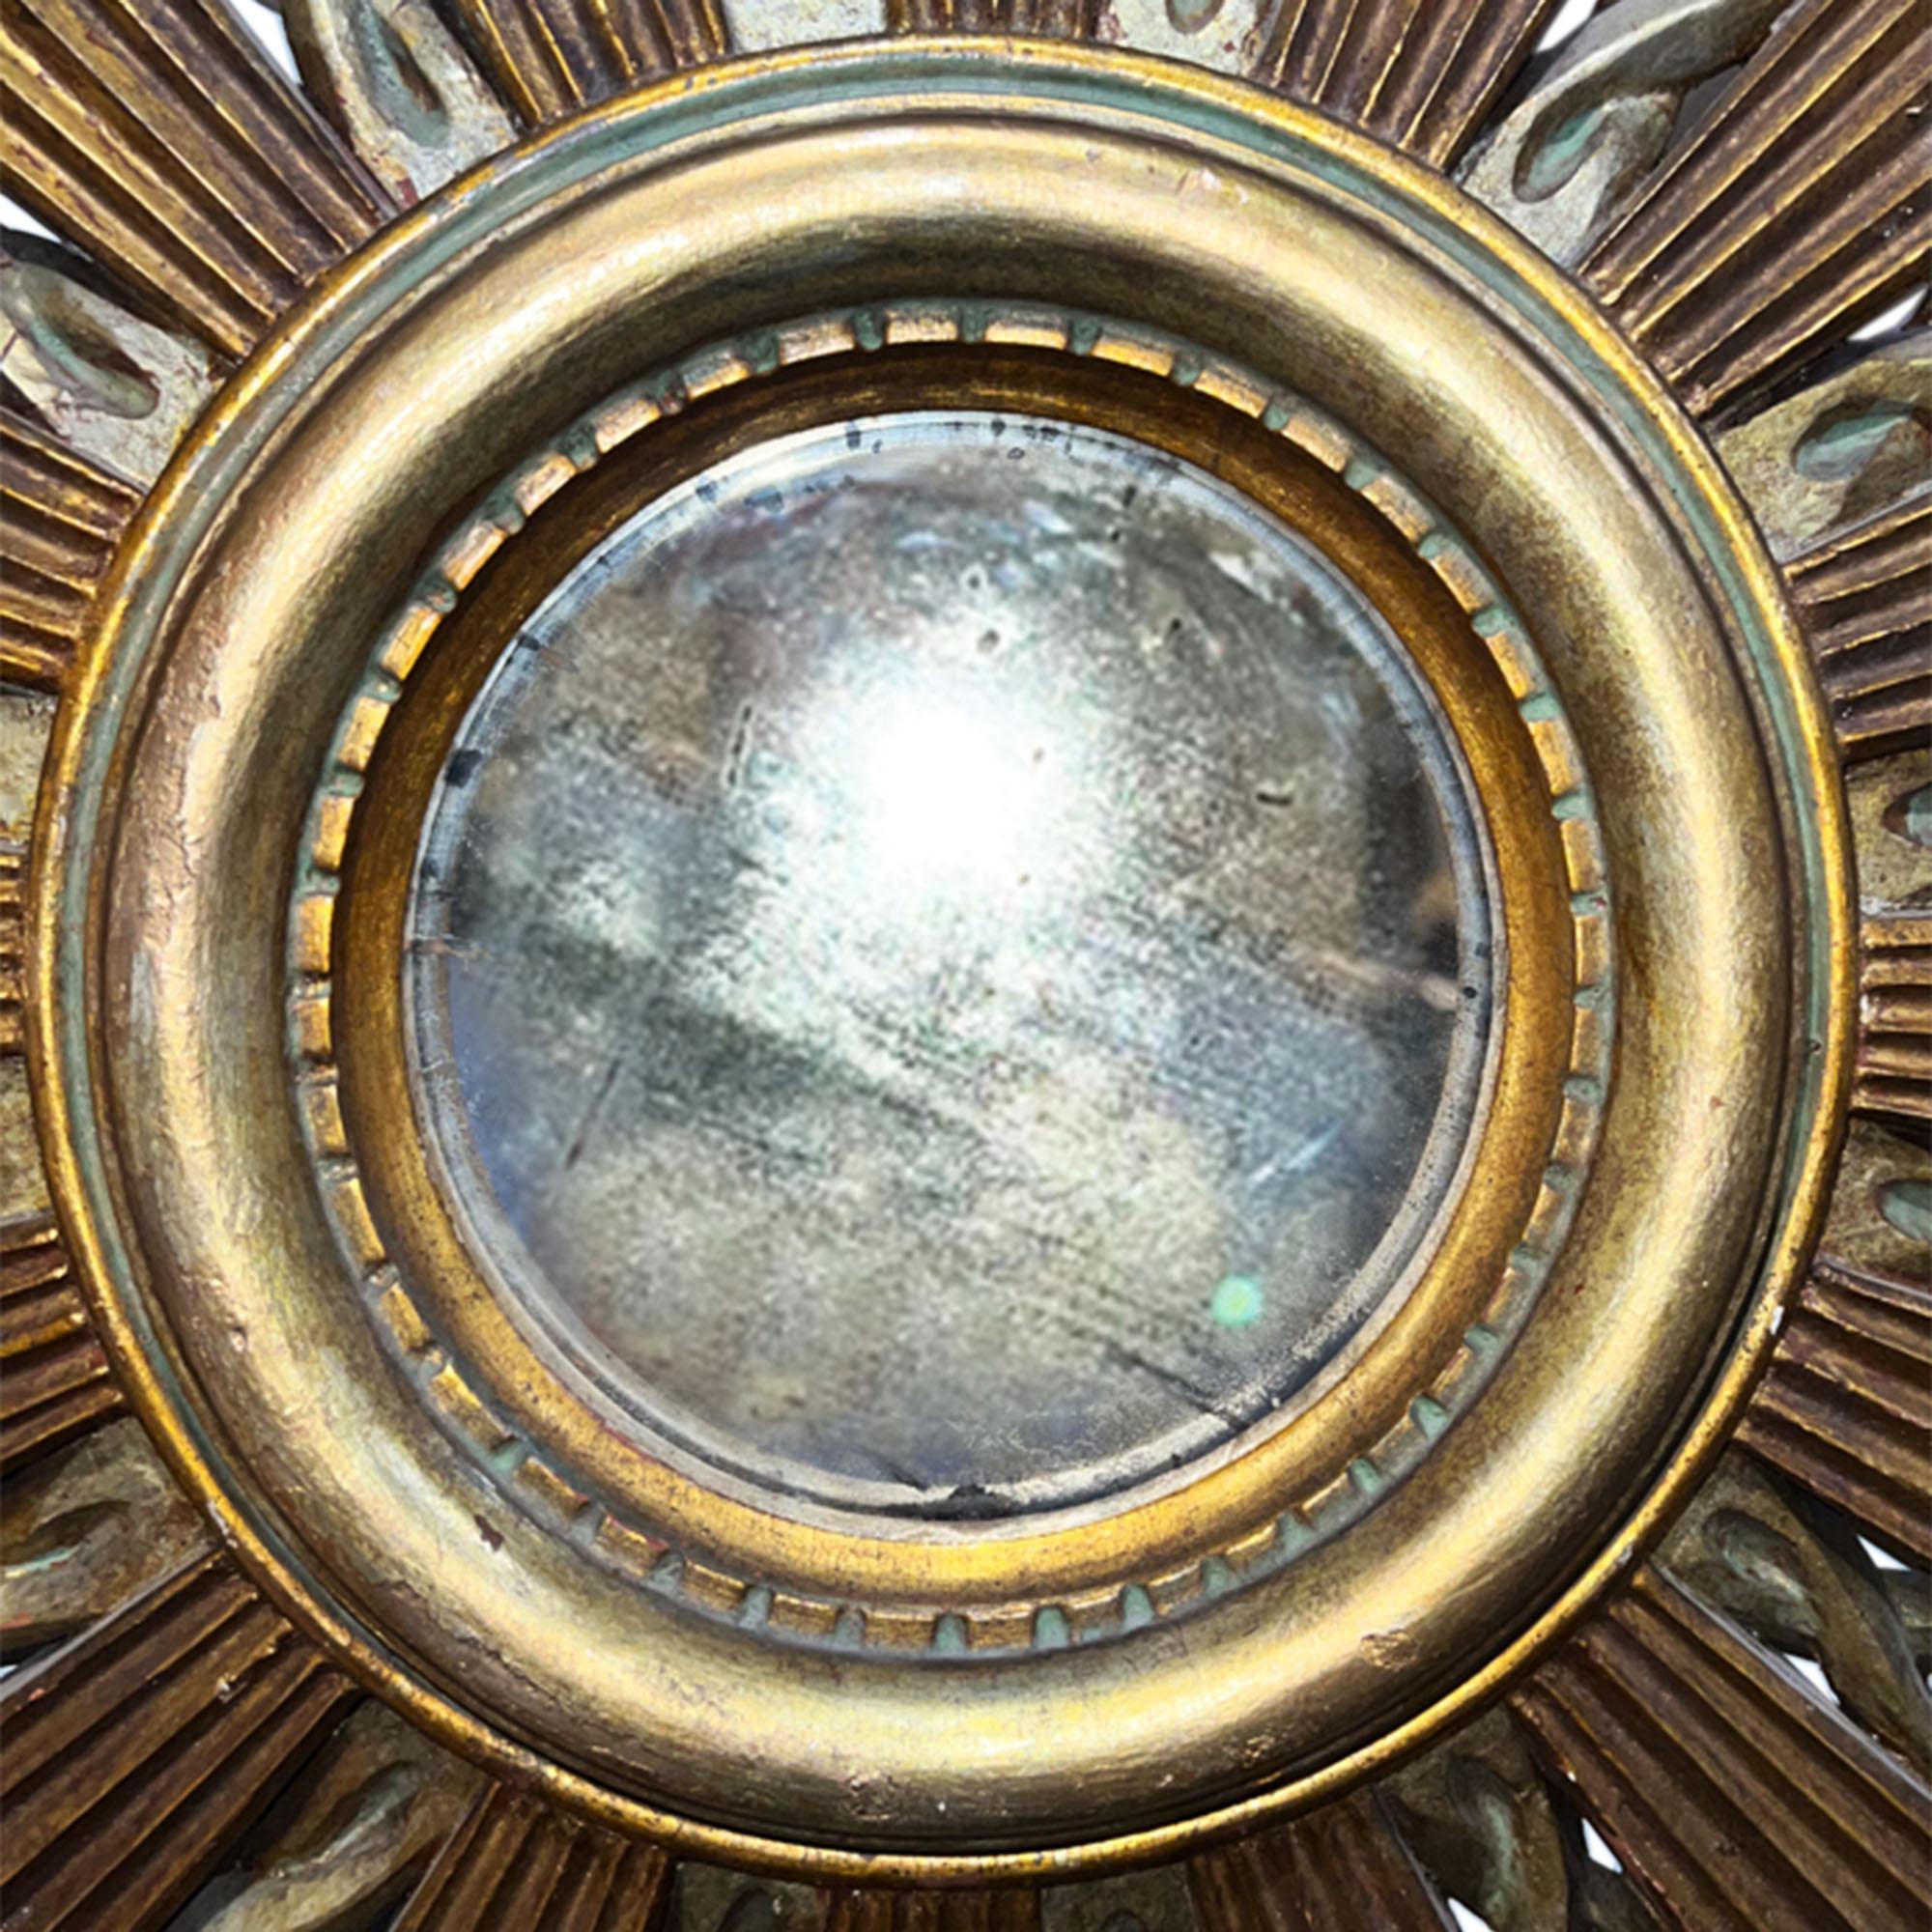 Il s'agit d'un beau miroir ensoleillé, fabriqué au milieu du 20e siècle en France.

Fabriqué en bois doré - la sculpture est si détaillée. Veuillez regarder toutes nos photos pour voir tous les détails.

Le diamètre de la plaque de miroir